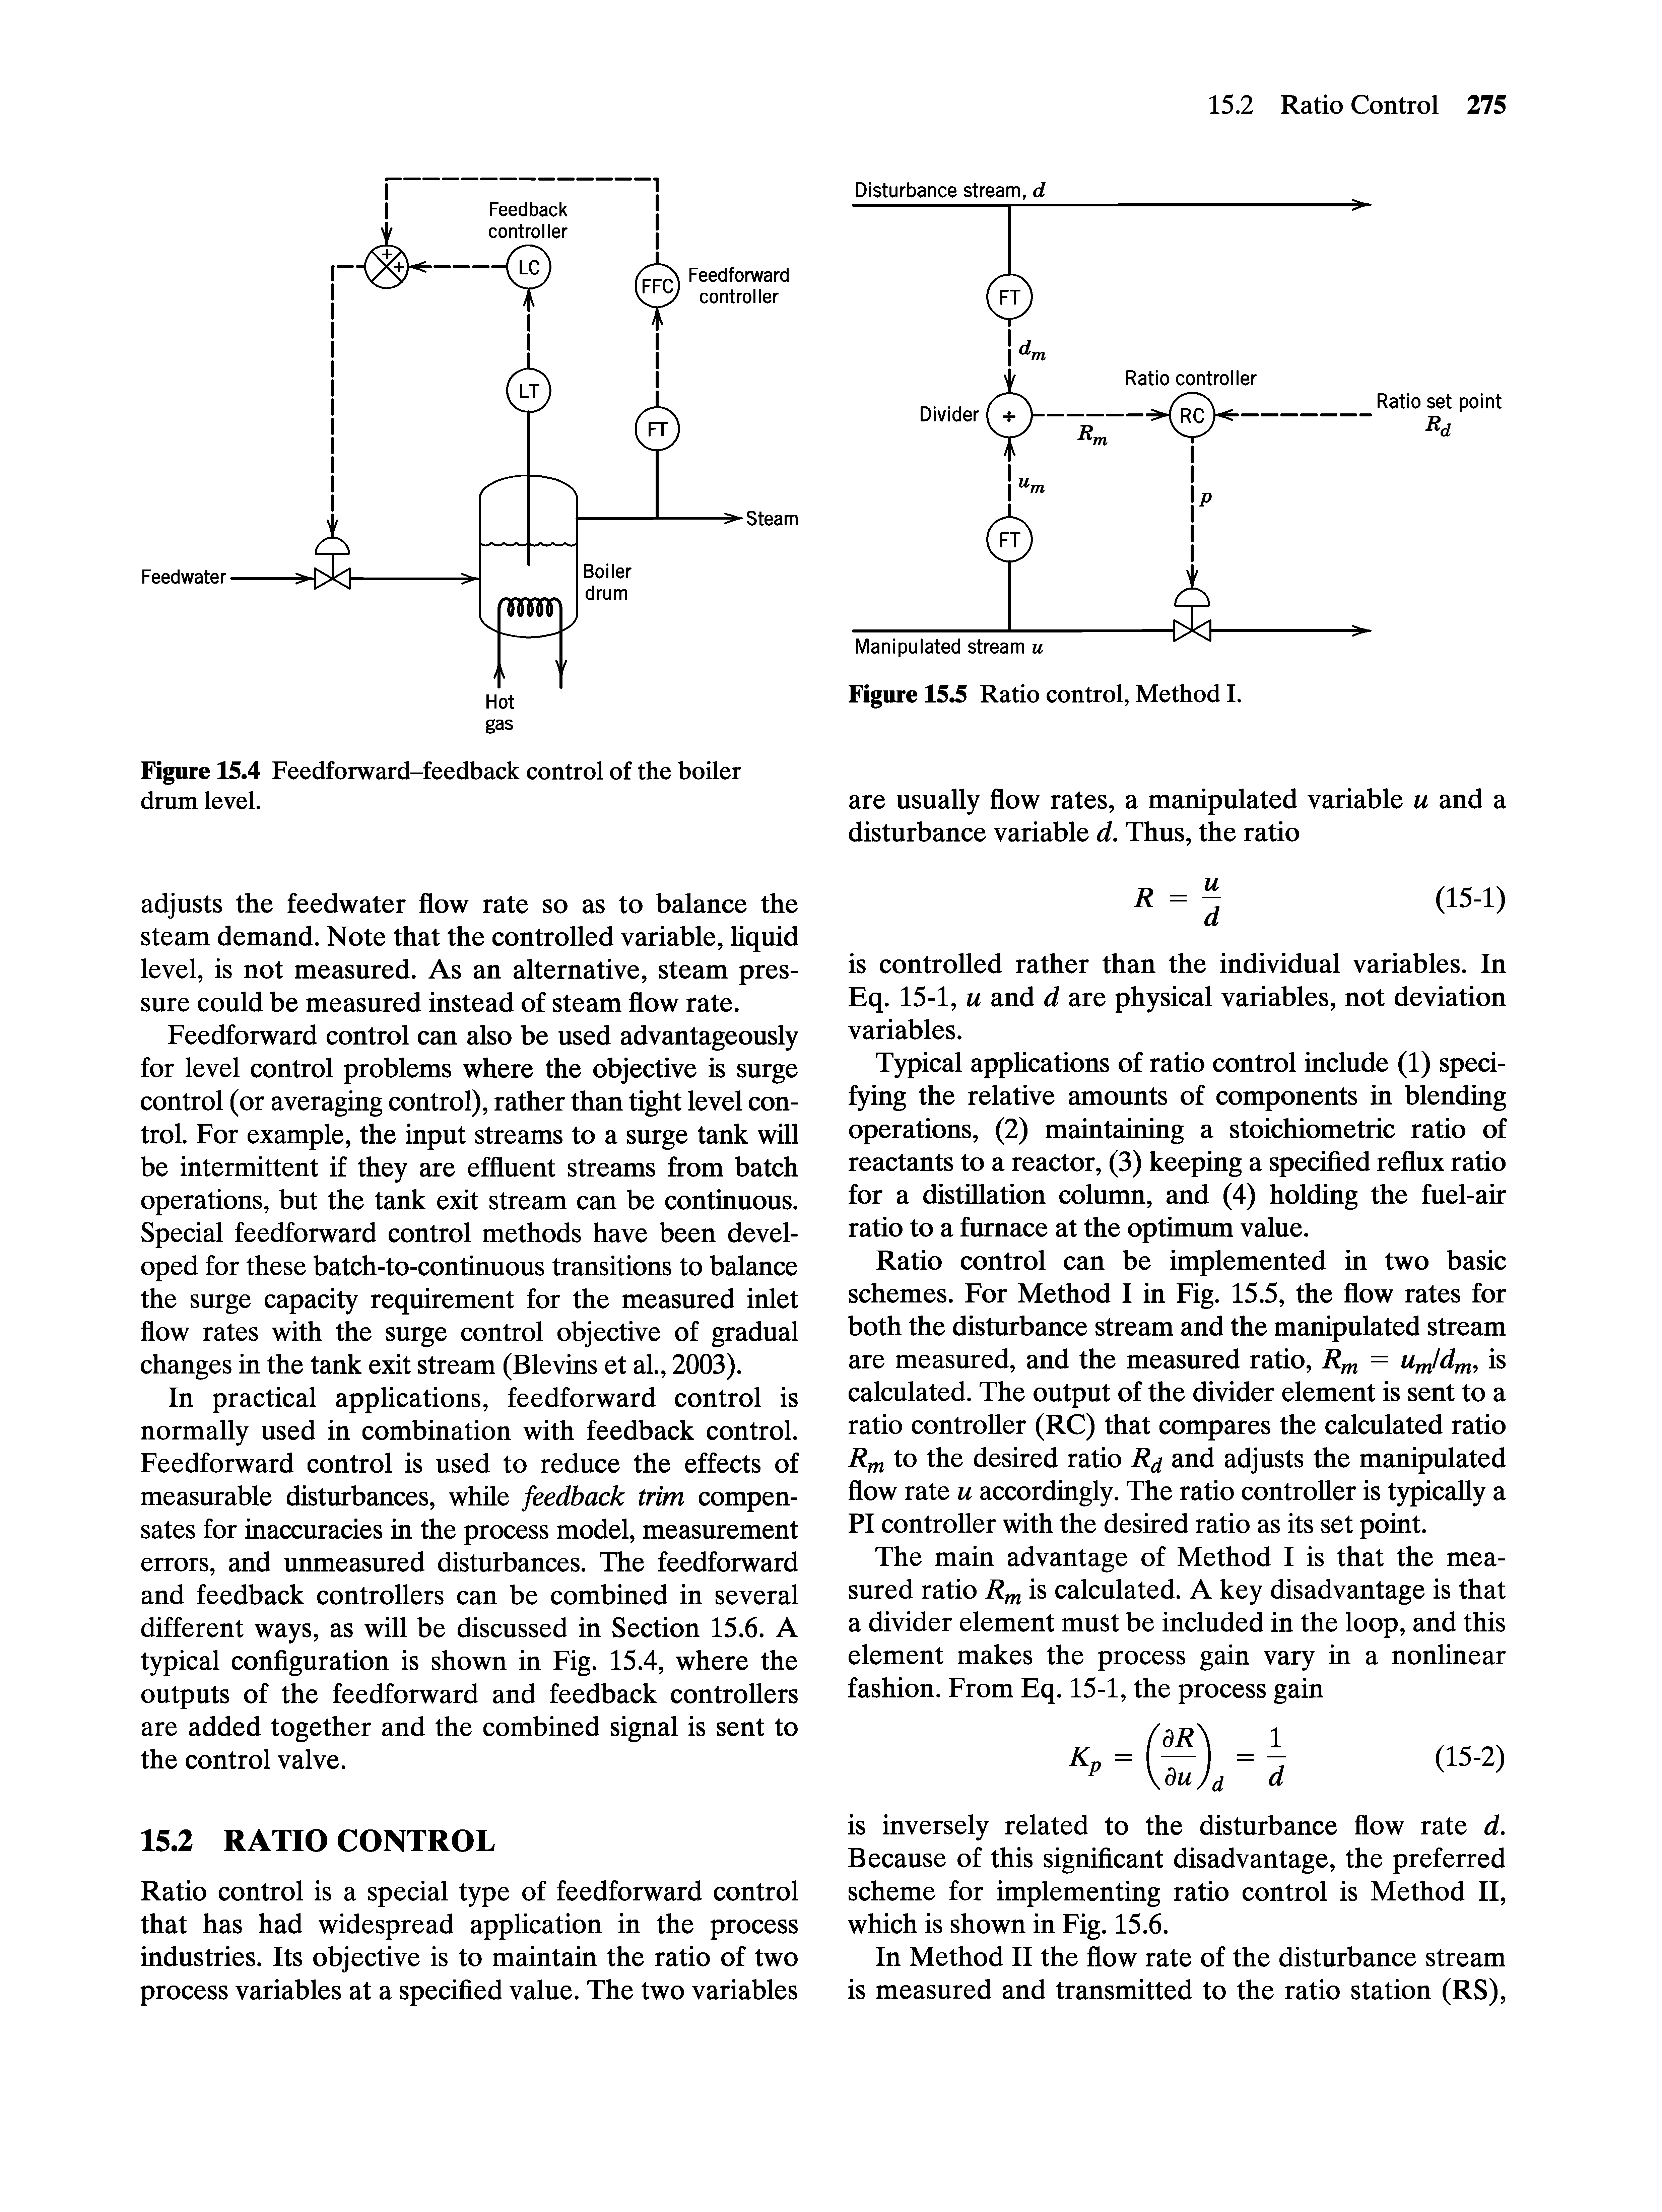 Figure 15.4 Feedforward-feedback control of the boiler drum level.